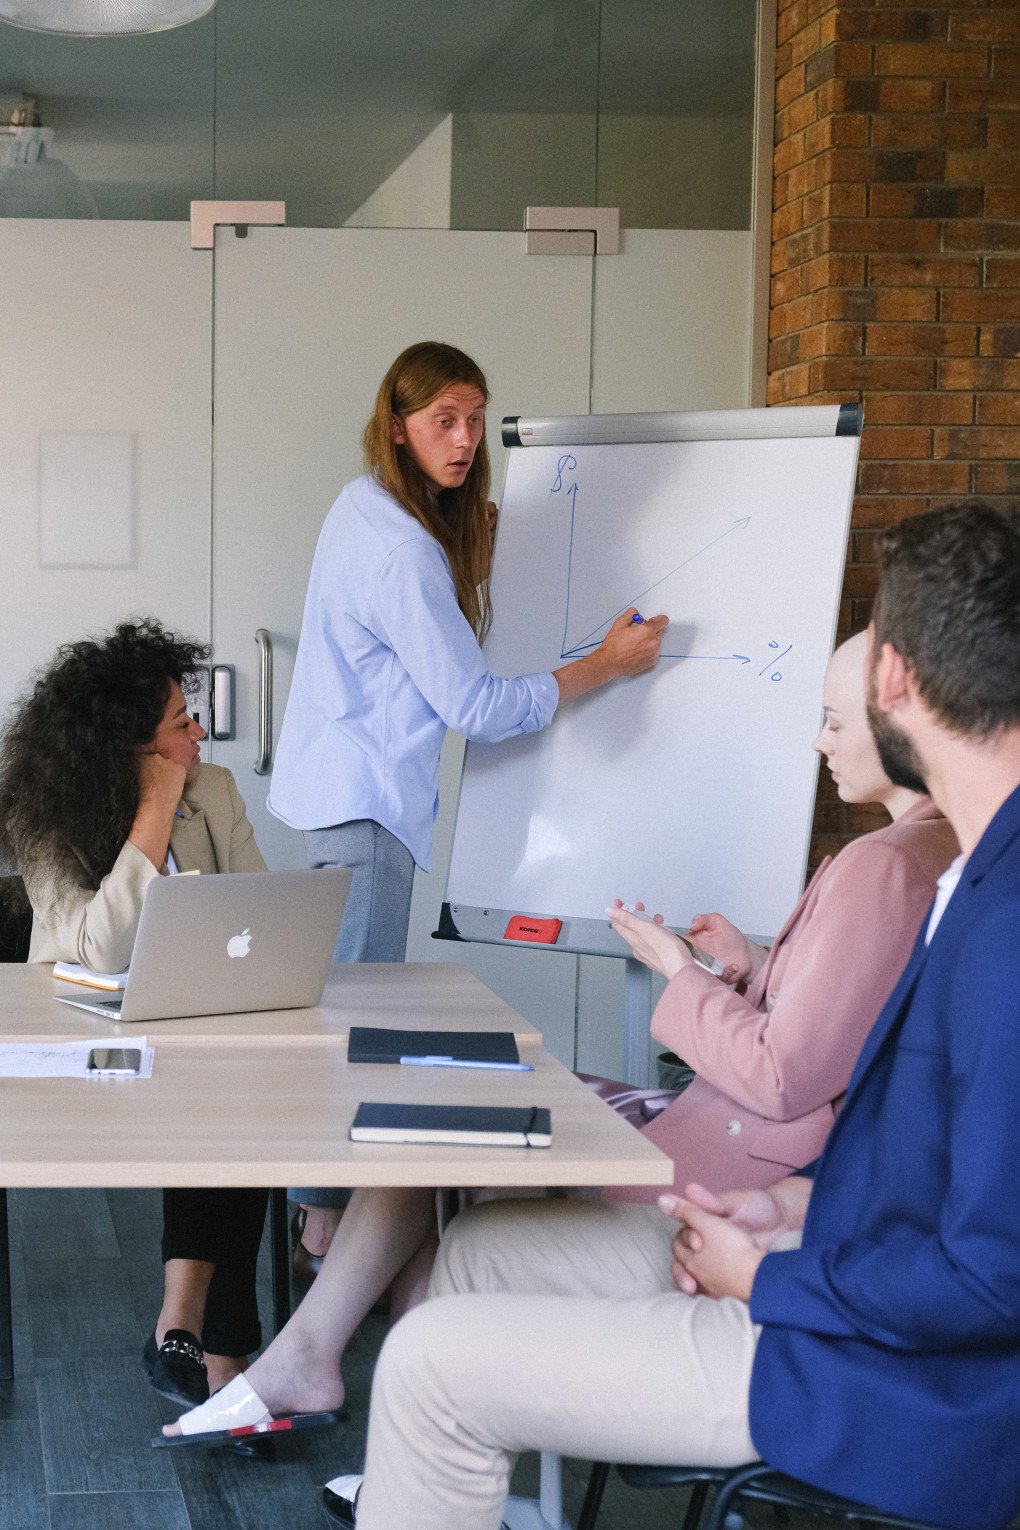 Das Bild spielt in einem Konferenzraum. Dort steht eine Frau vor einem Whiteboard und zeichnet eine Grafik. Davor sitzen an einem Tisch 2 Frauen und ein Mann